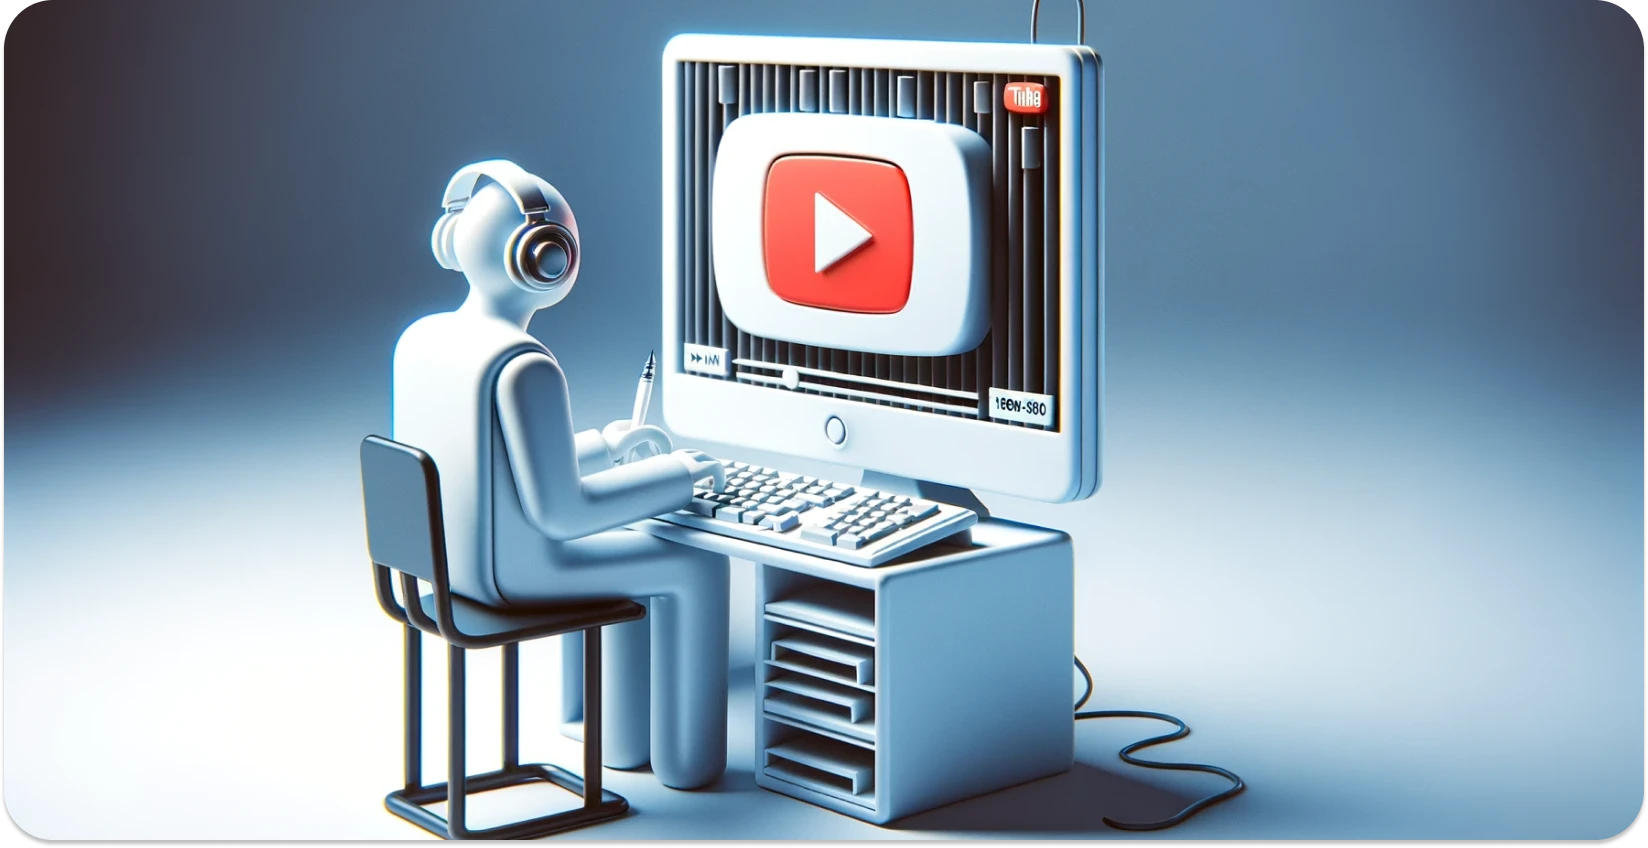 Gestileerde illustratie van een persoon die een computer gebruikt met de YouTube interface, gericht op transcriptie.